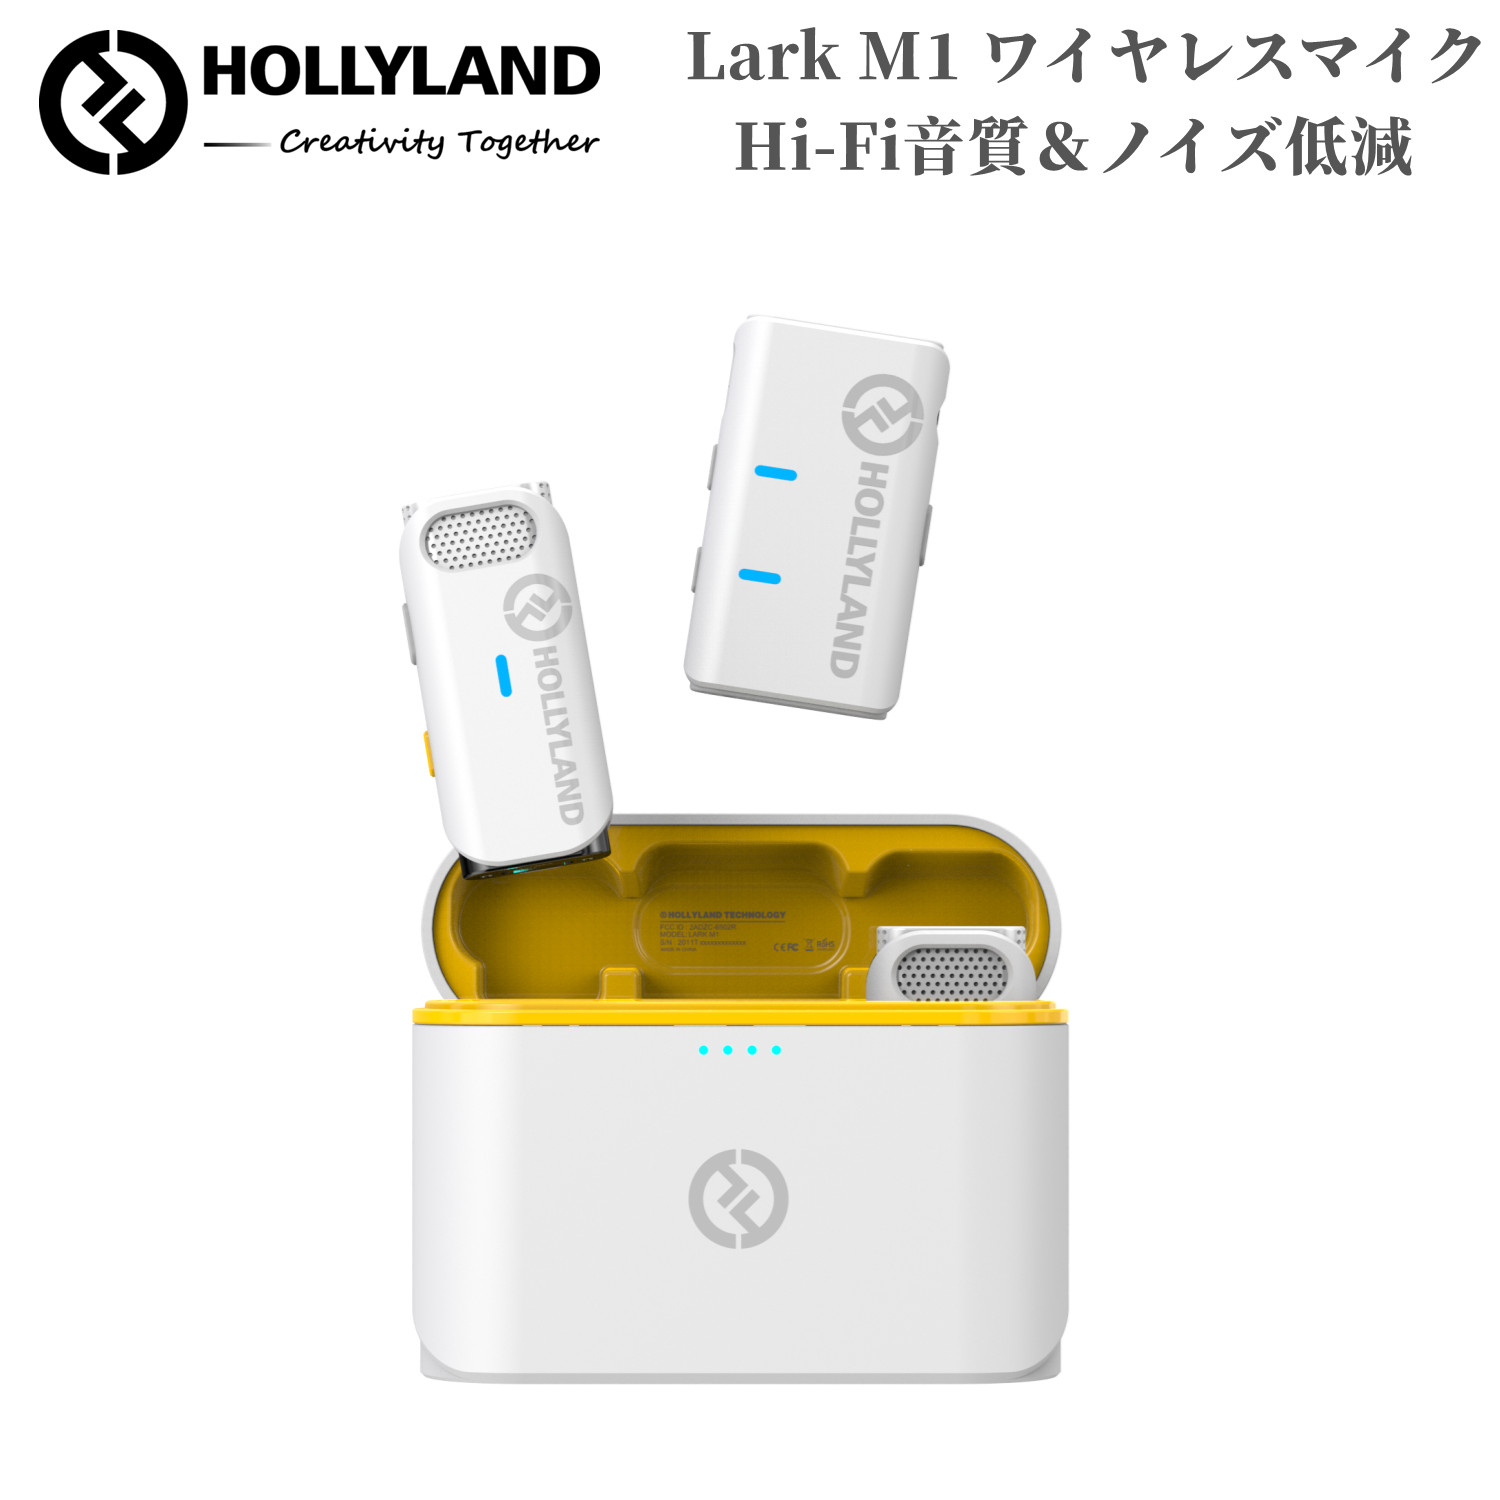 Hollyland Lark M1 ワイヤレスマイクシステム収納充電ケース付き＆自動ペアリング ピンマイク ワイヤレス スマホ カメラ タブレット レコーダーなどに対応 (白)